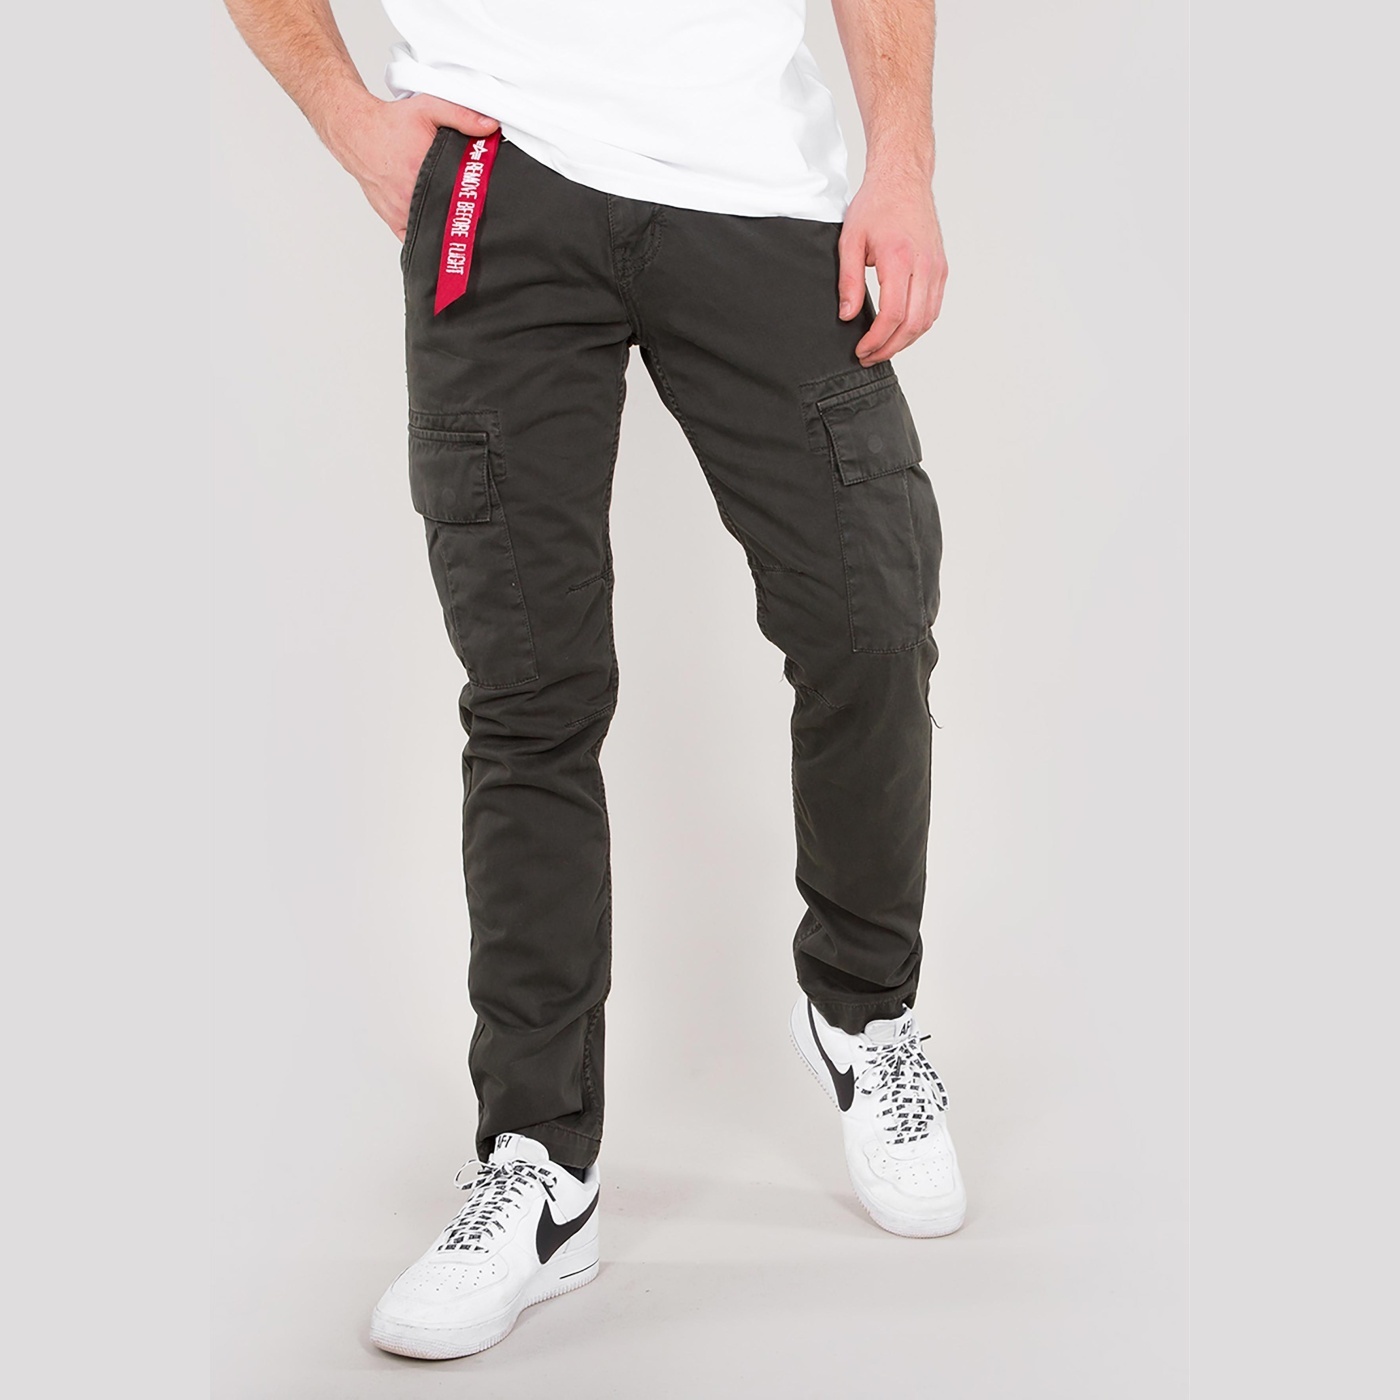 kalhoty AGENT PANT greyblack